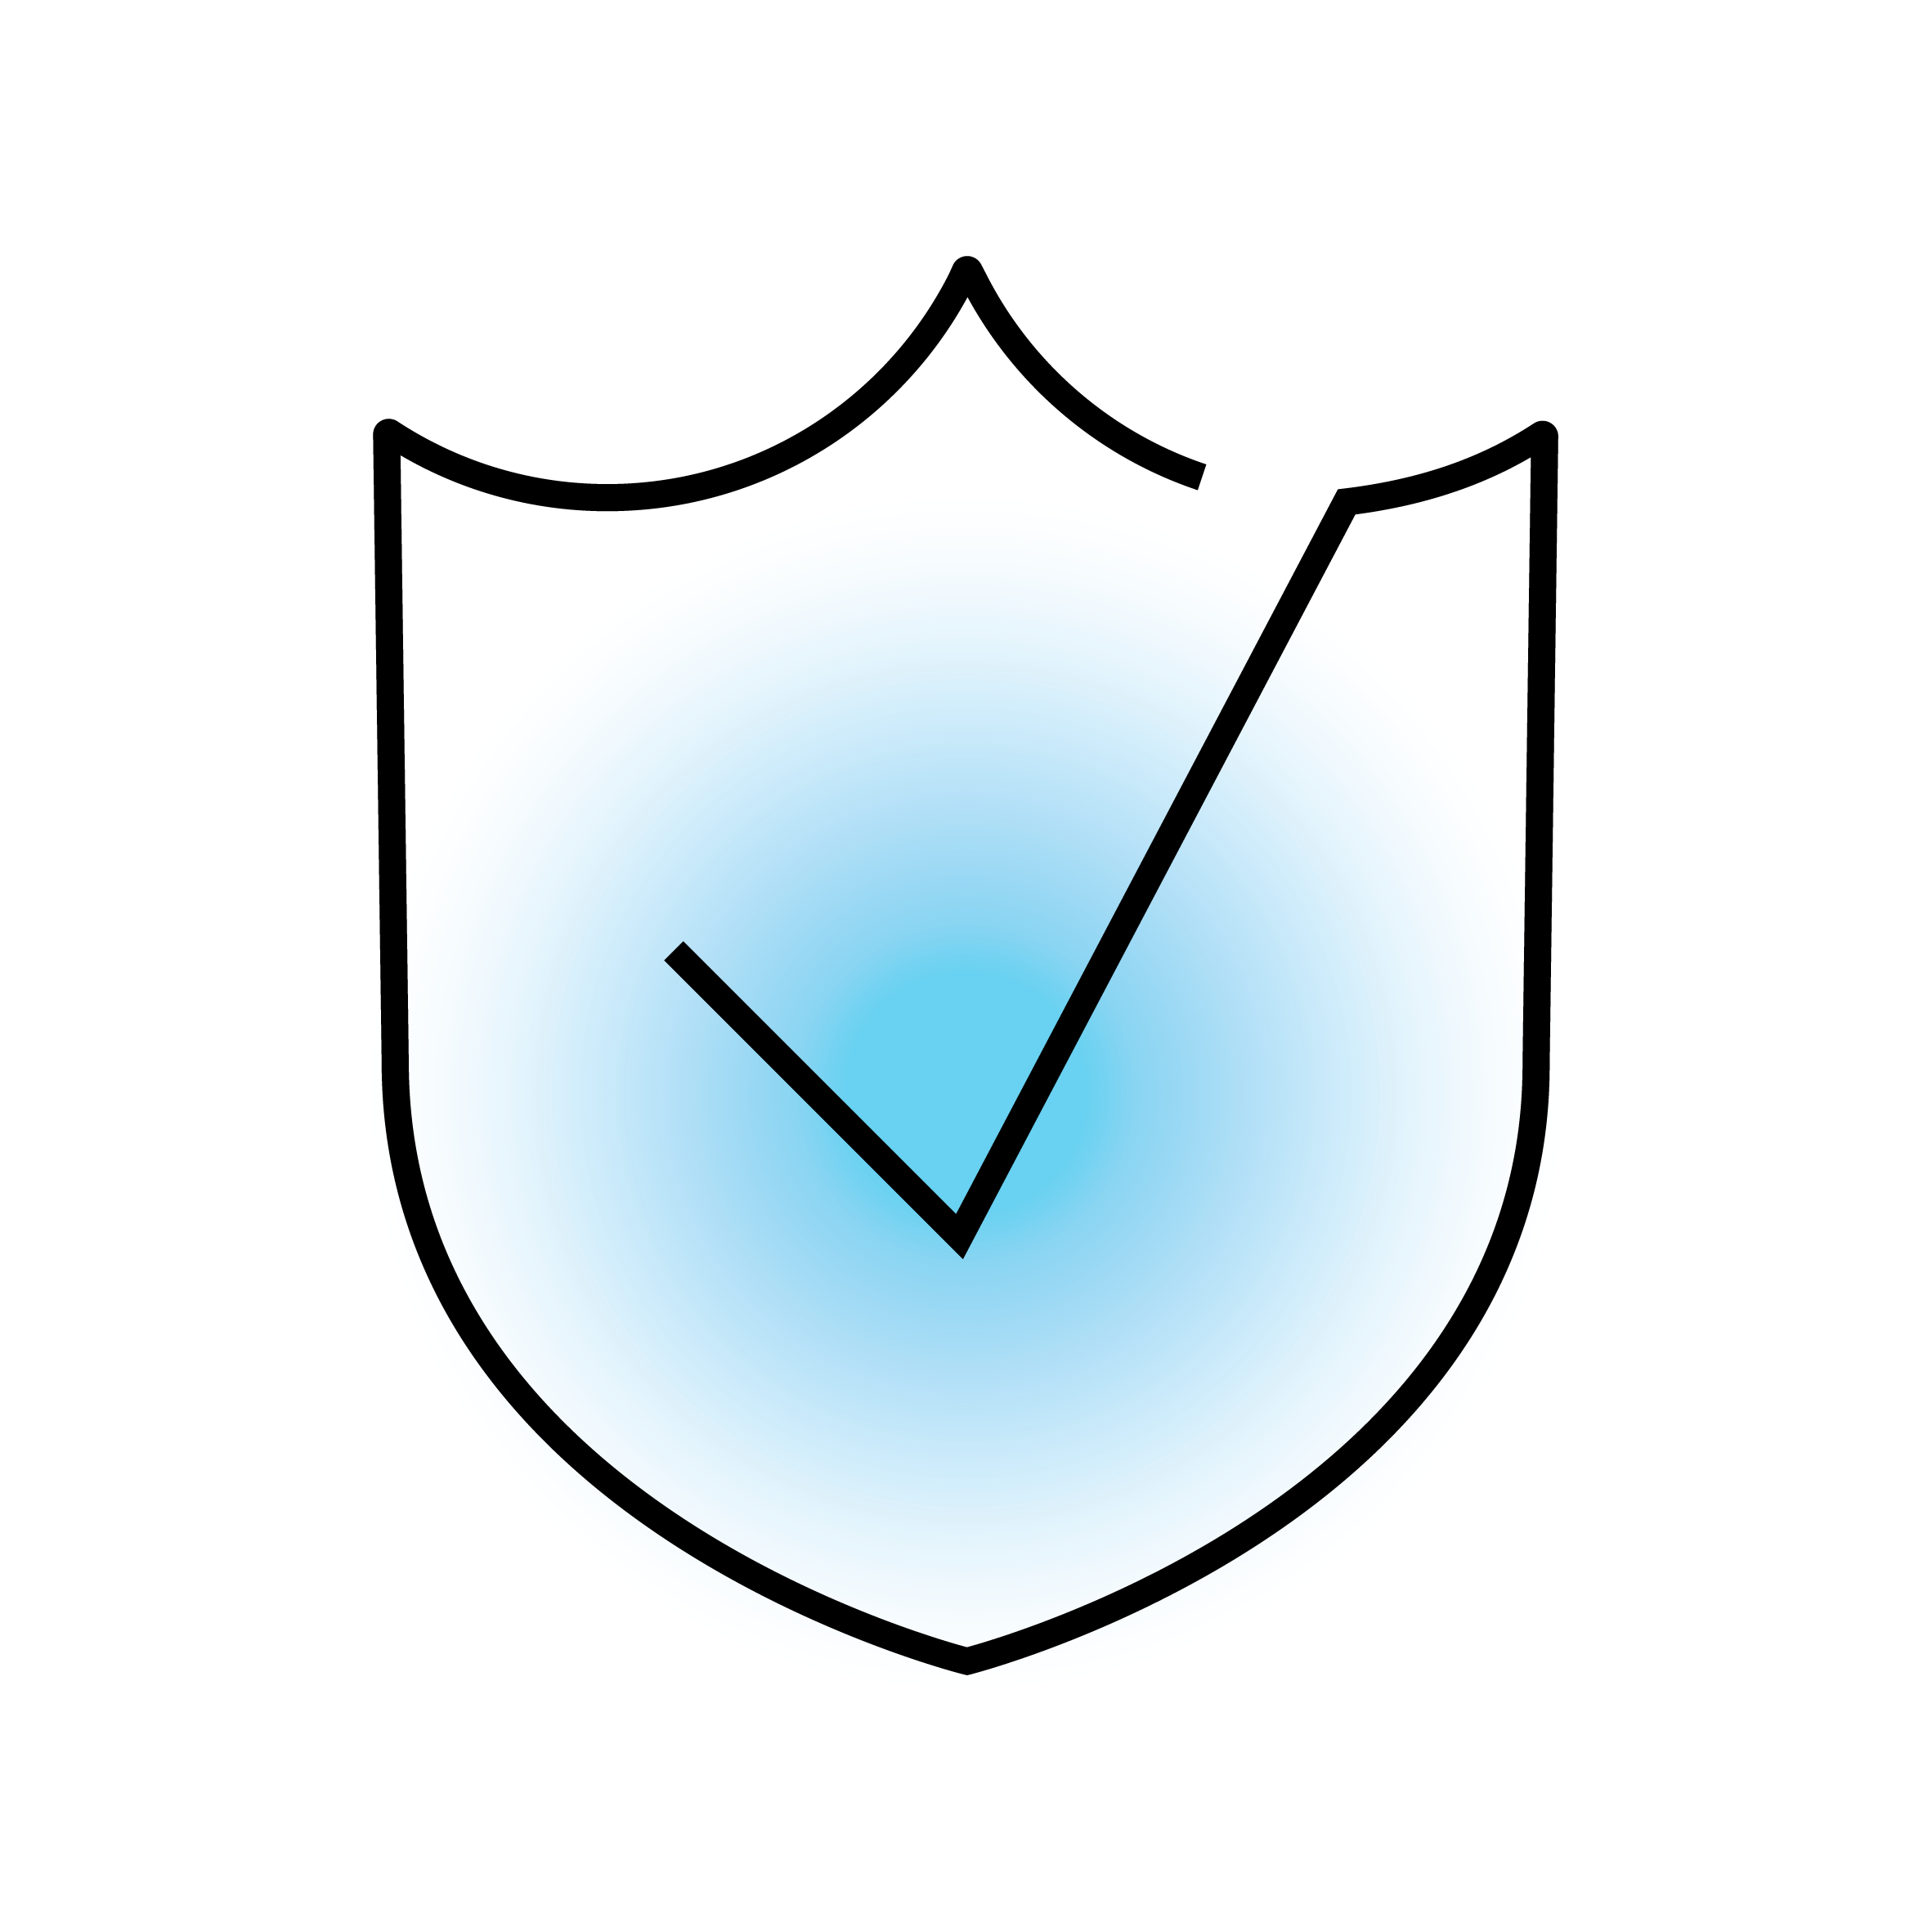 Schild-Symbol mit blauem Hintergrund und Häkchen zur Darstellung von Sicherheit oder Schutz.